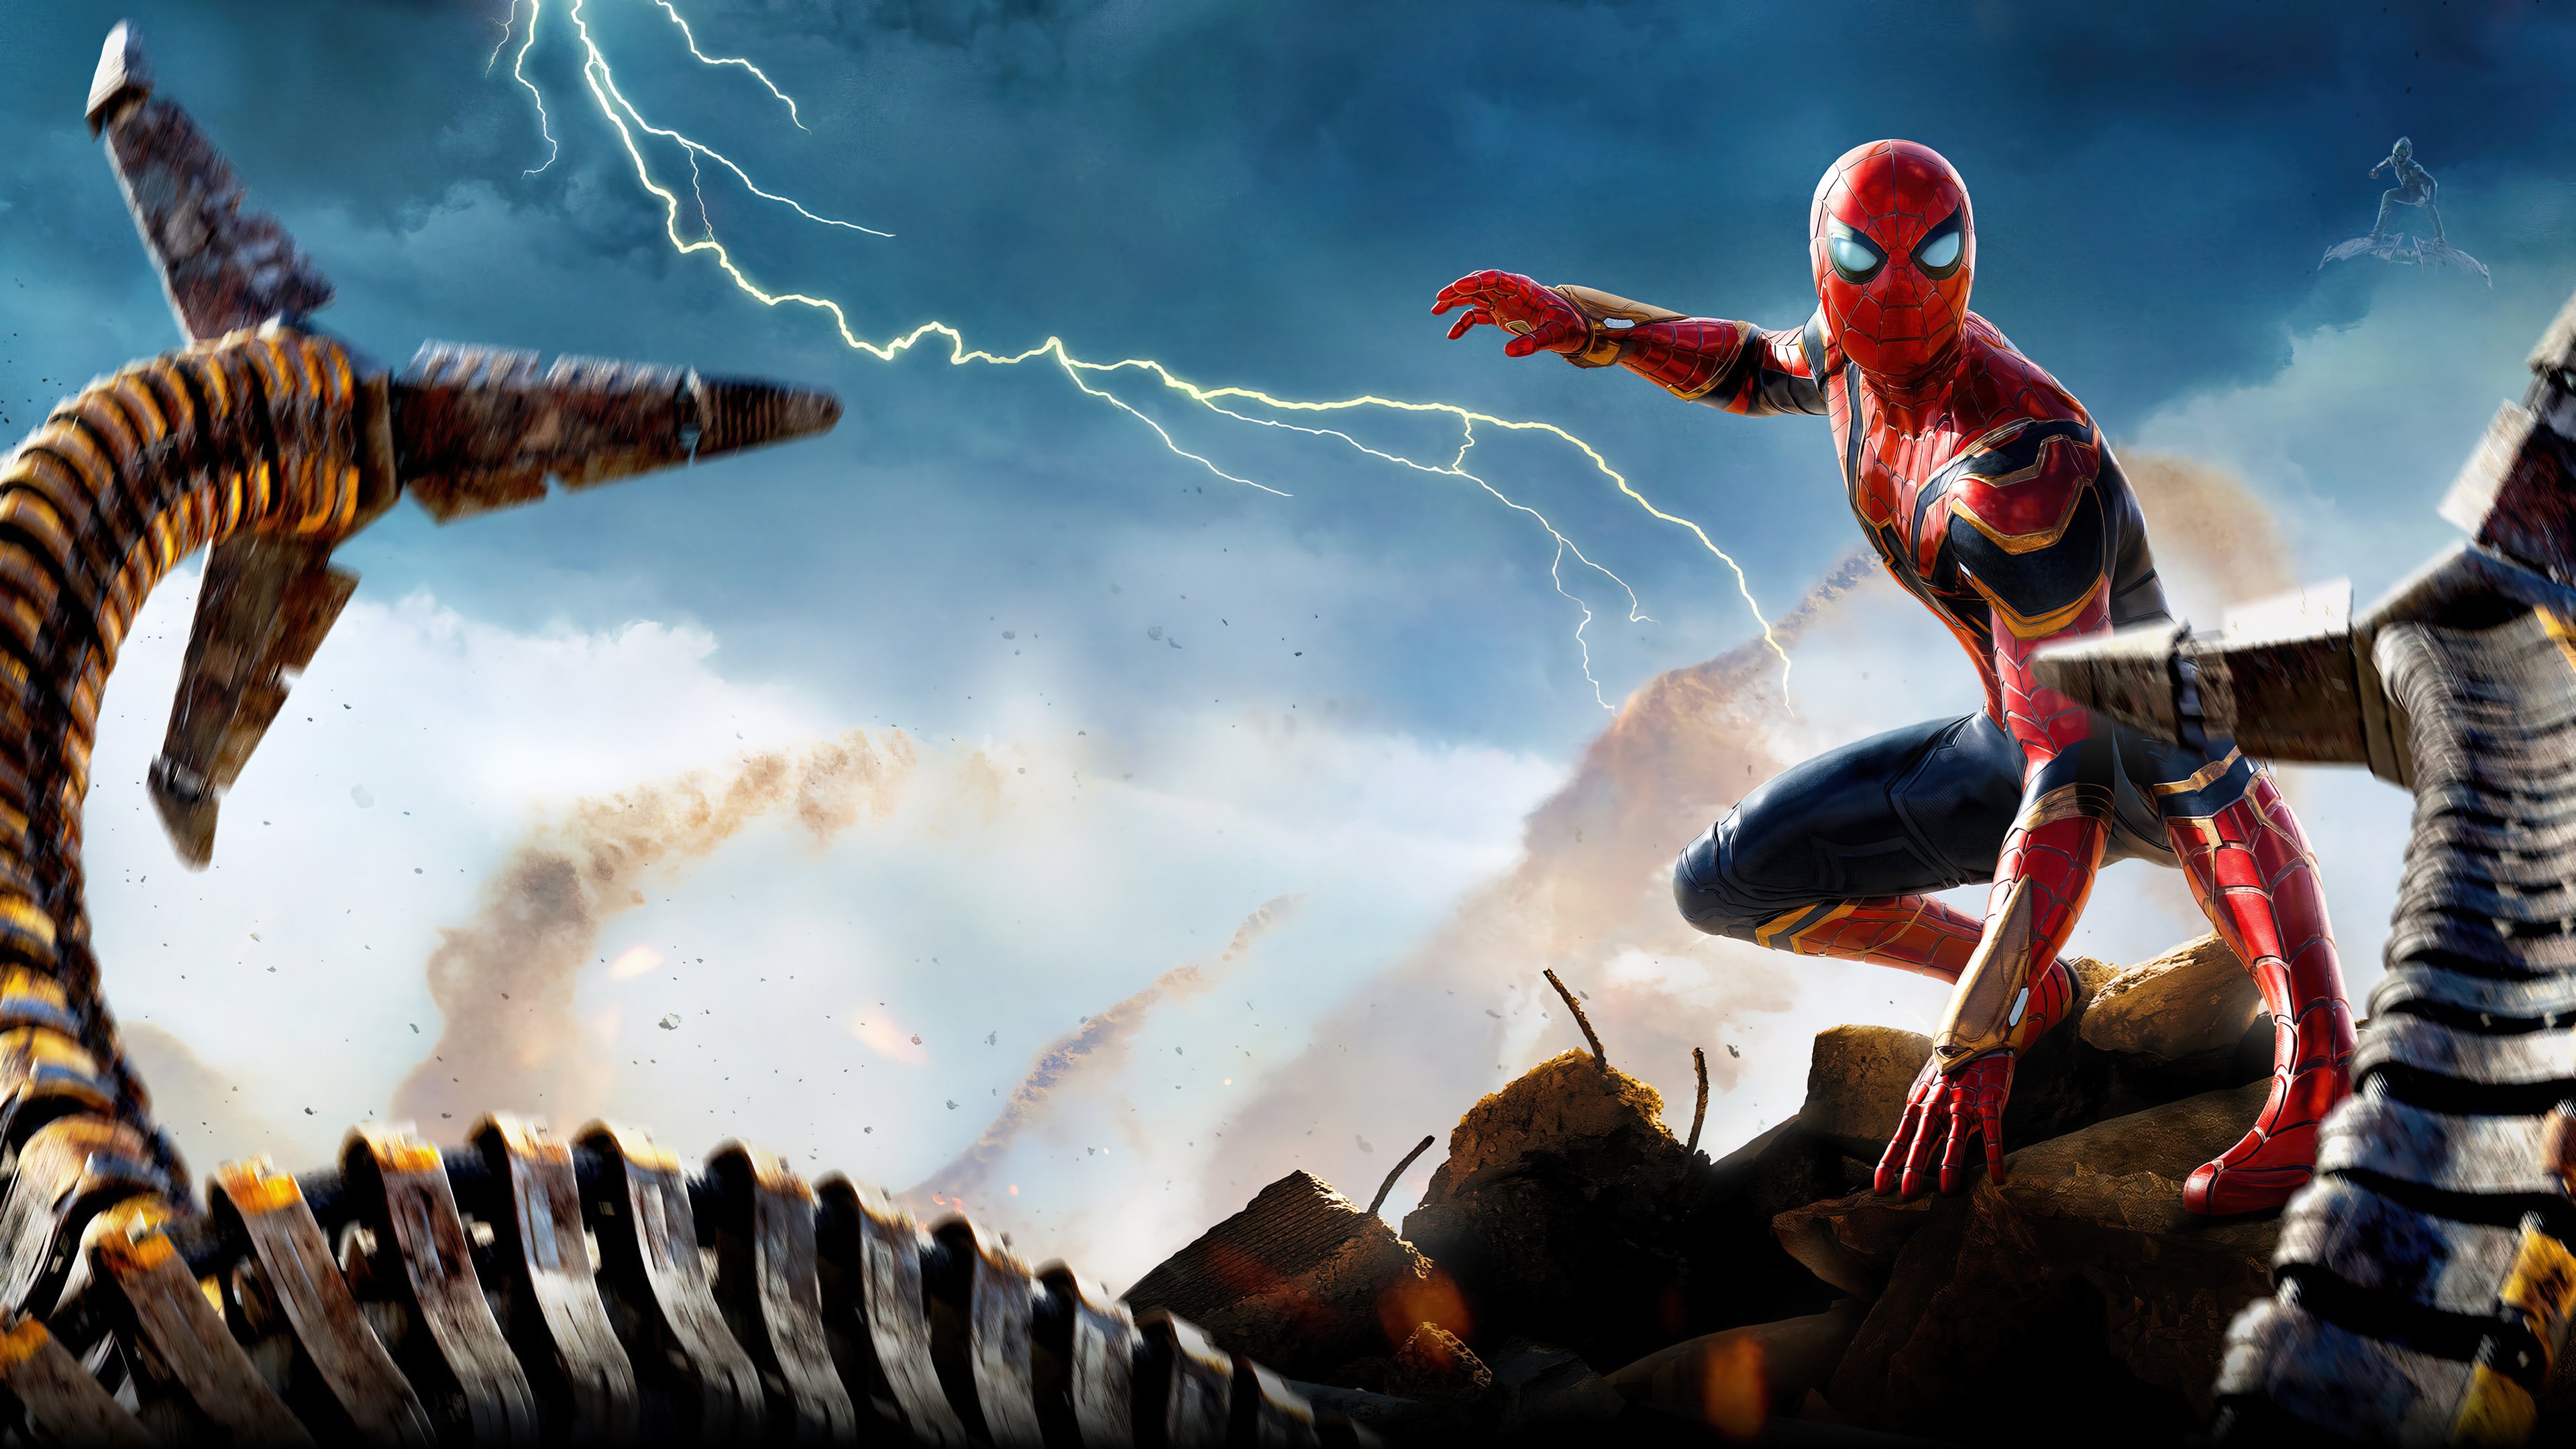 Wallpaper Spider Man vs Octopus